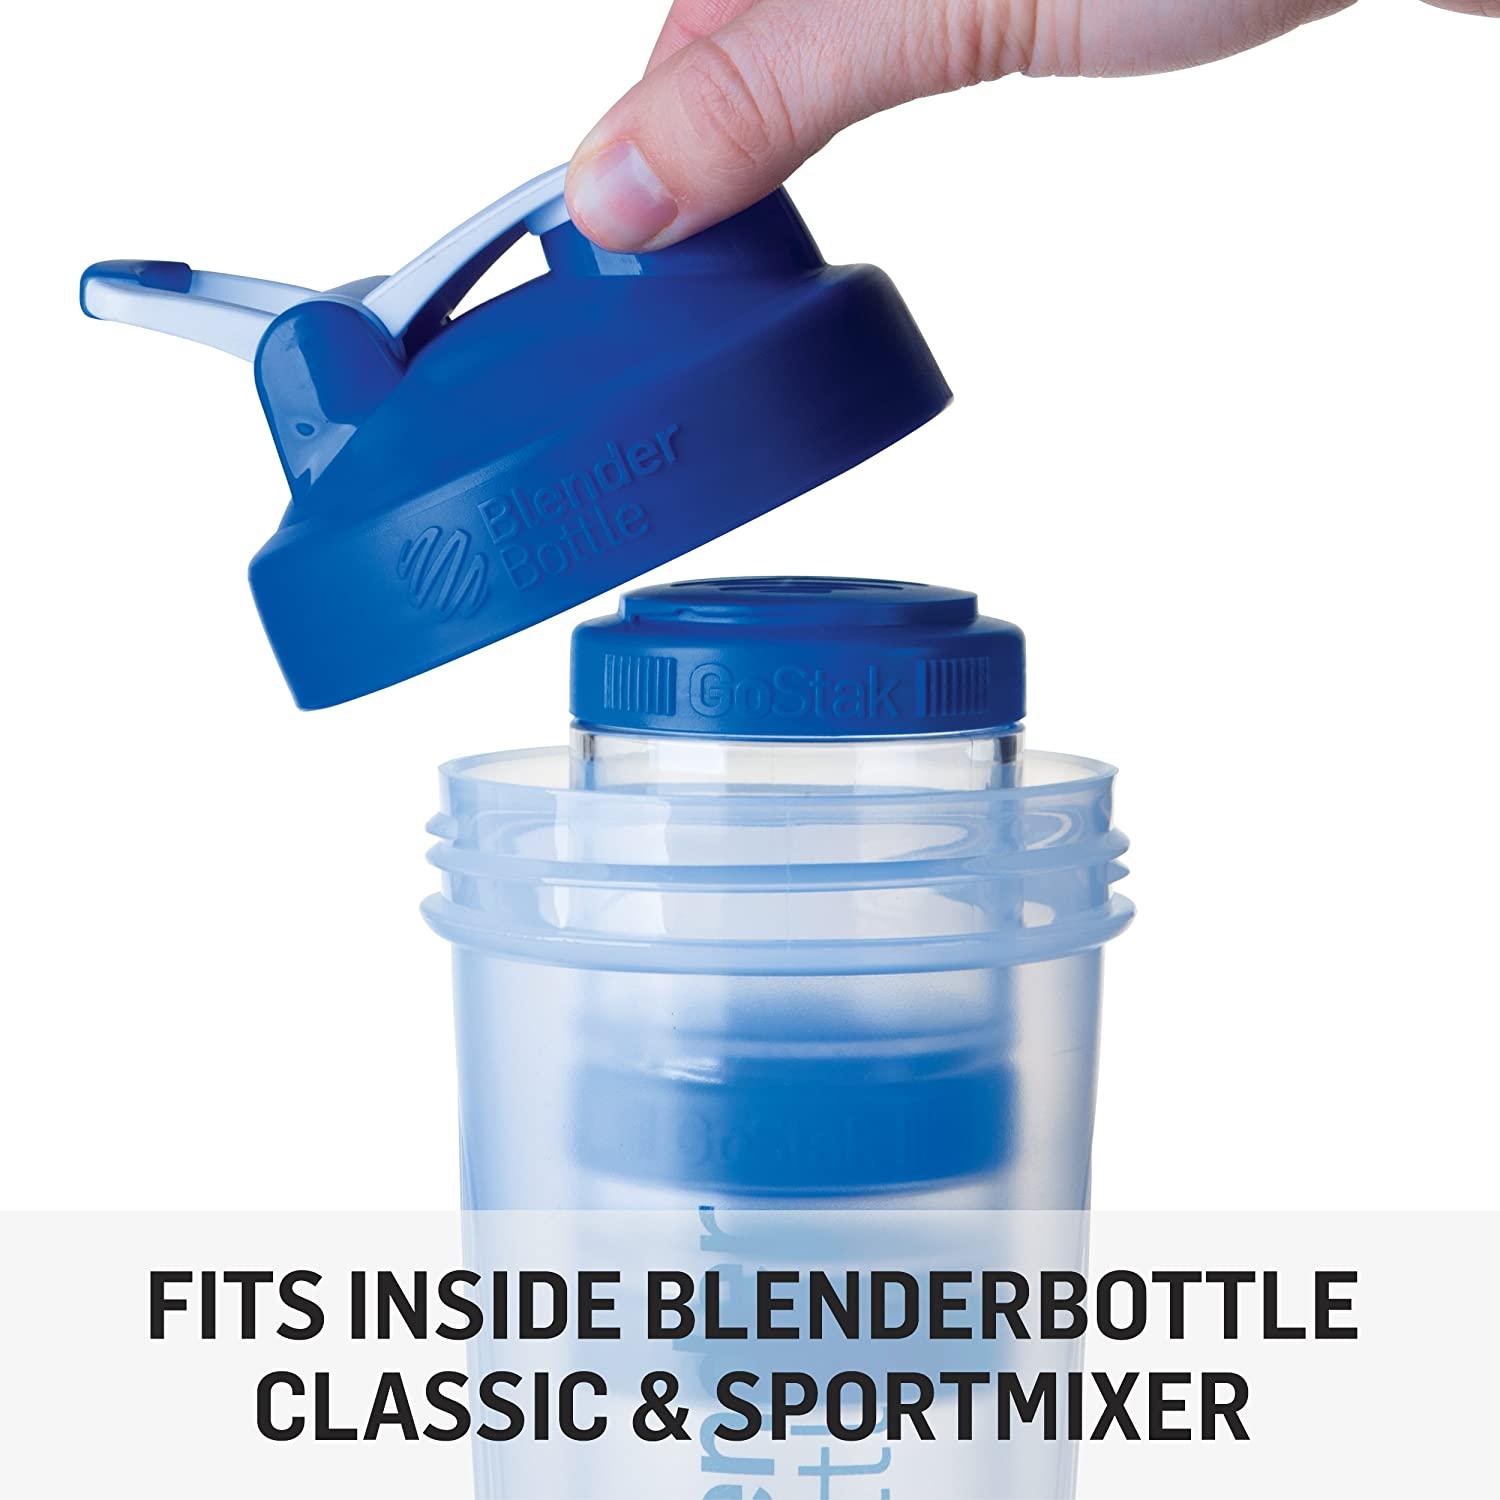 Sundesa Blender Bottle GoStak, White - Starter 4Pak 